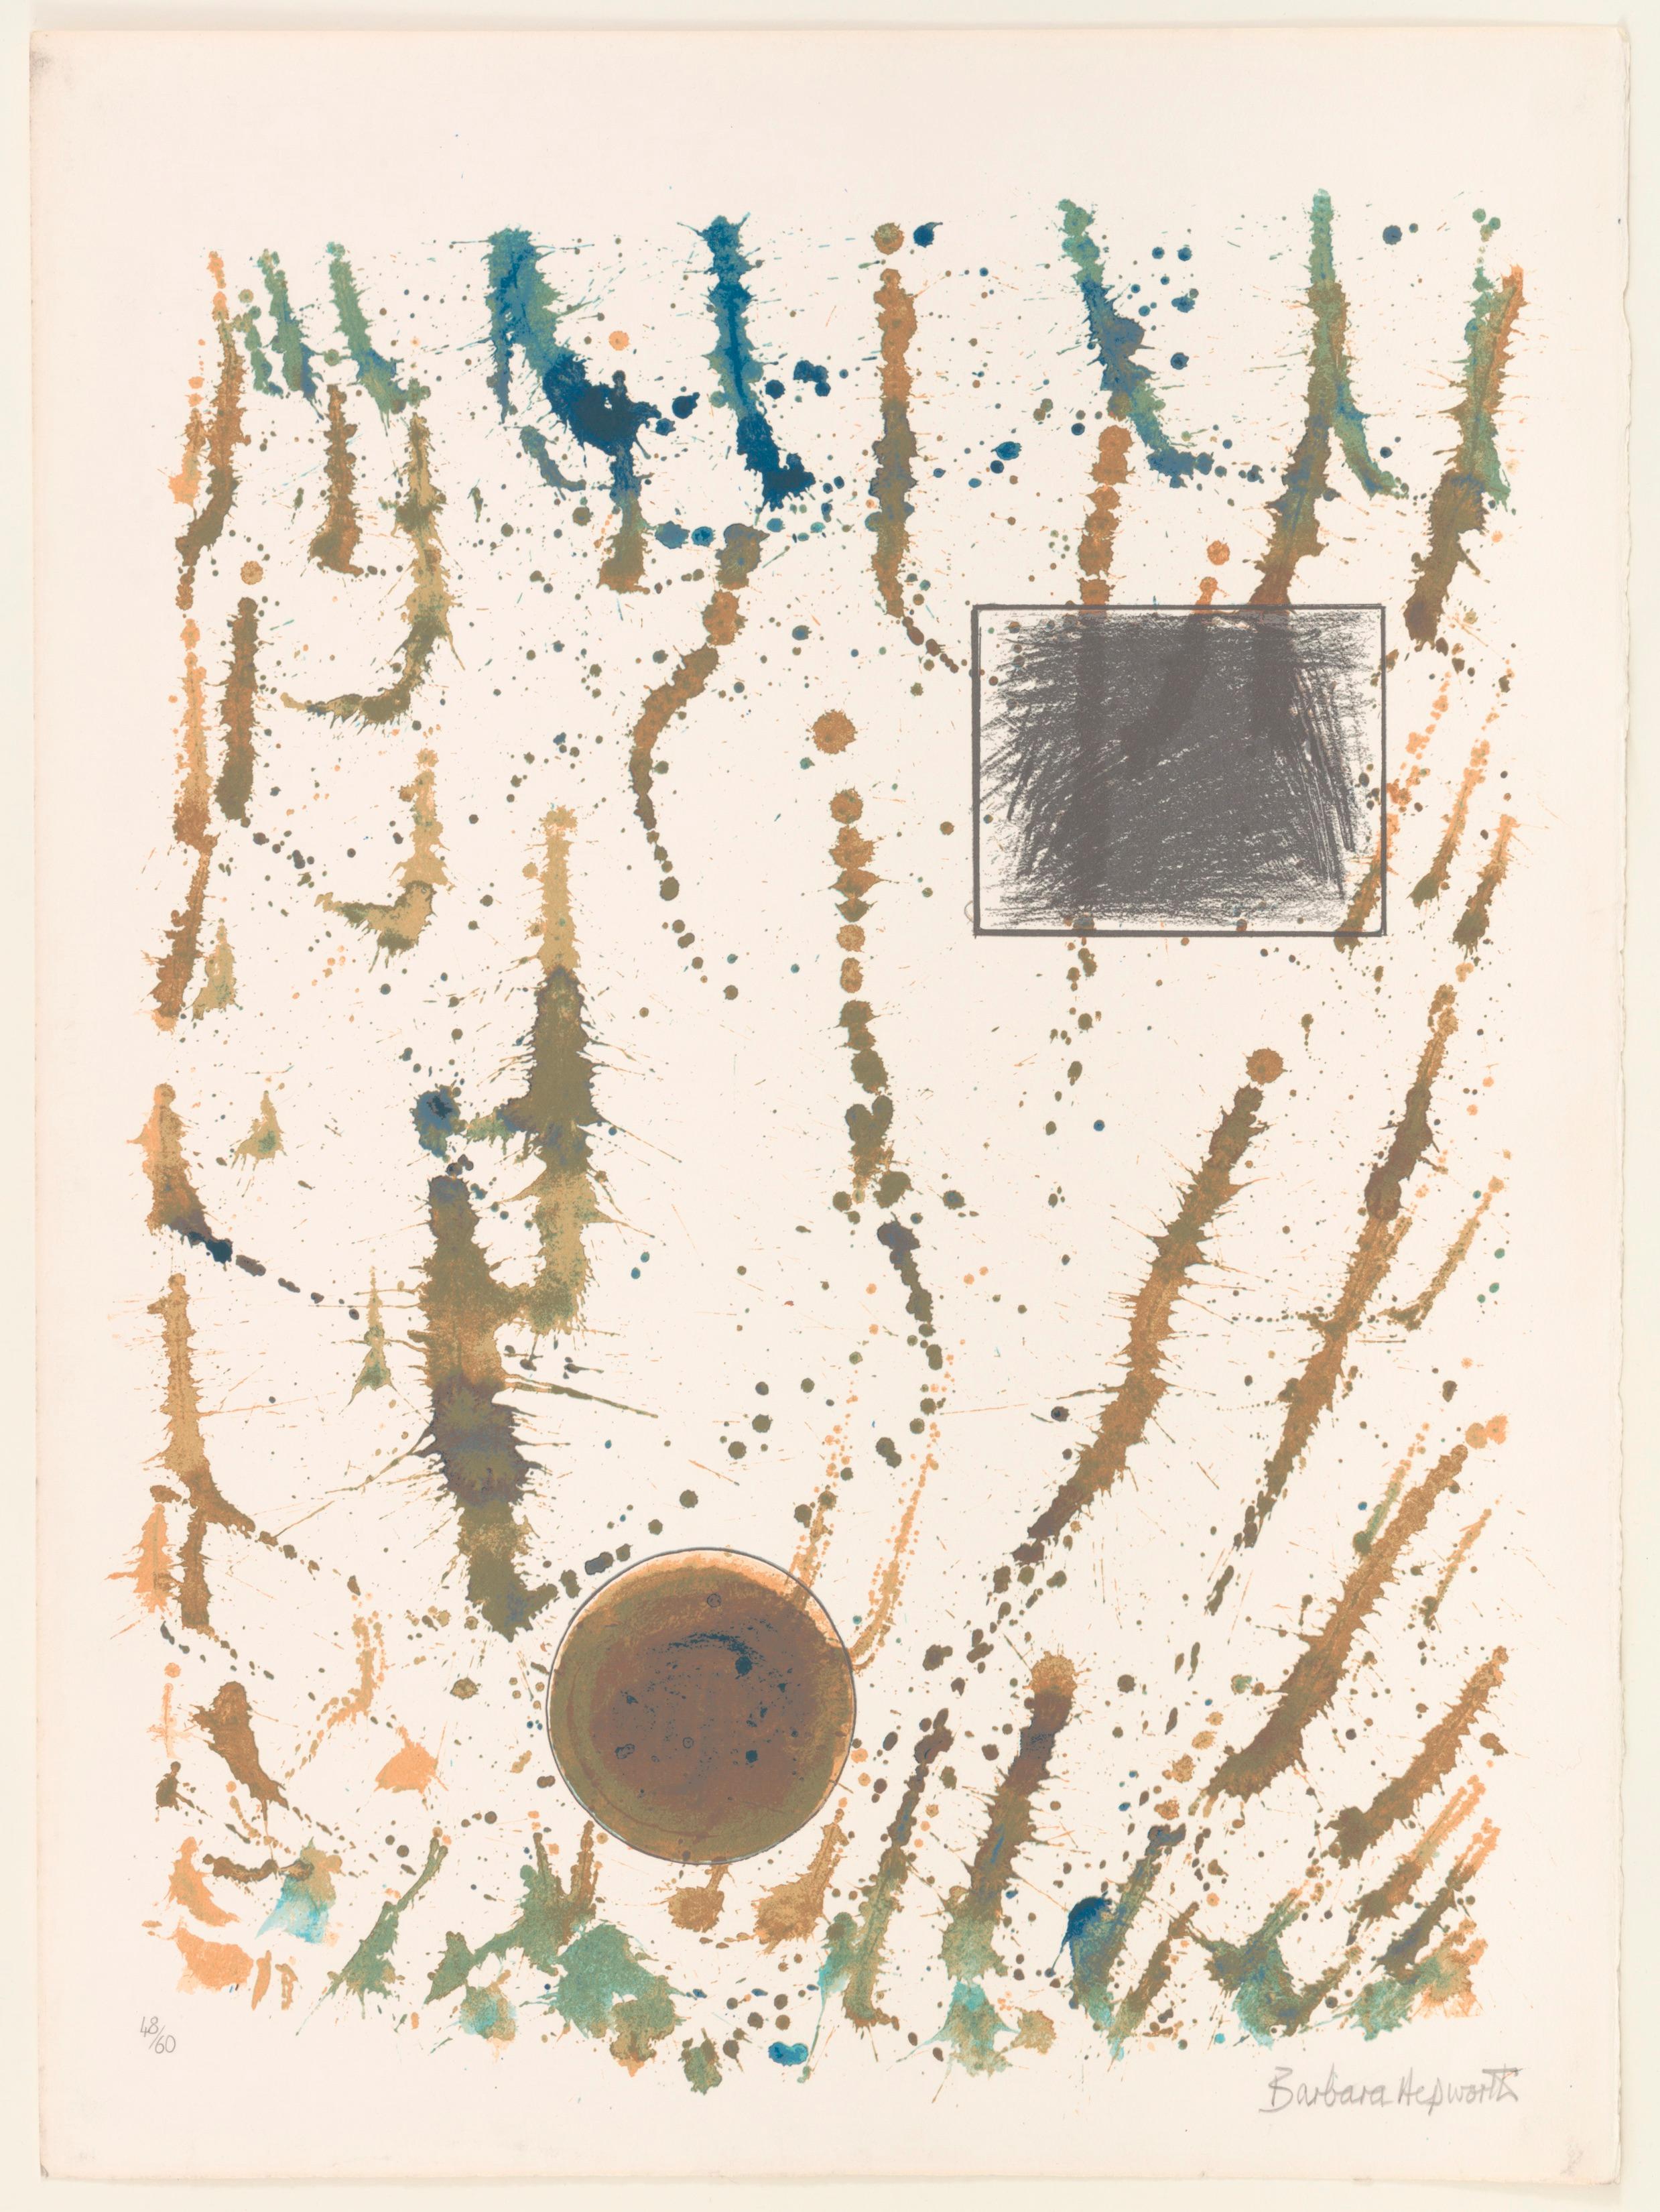 Barbara Hepworth Abstract Print – Formen in einem Flurry